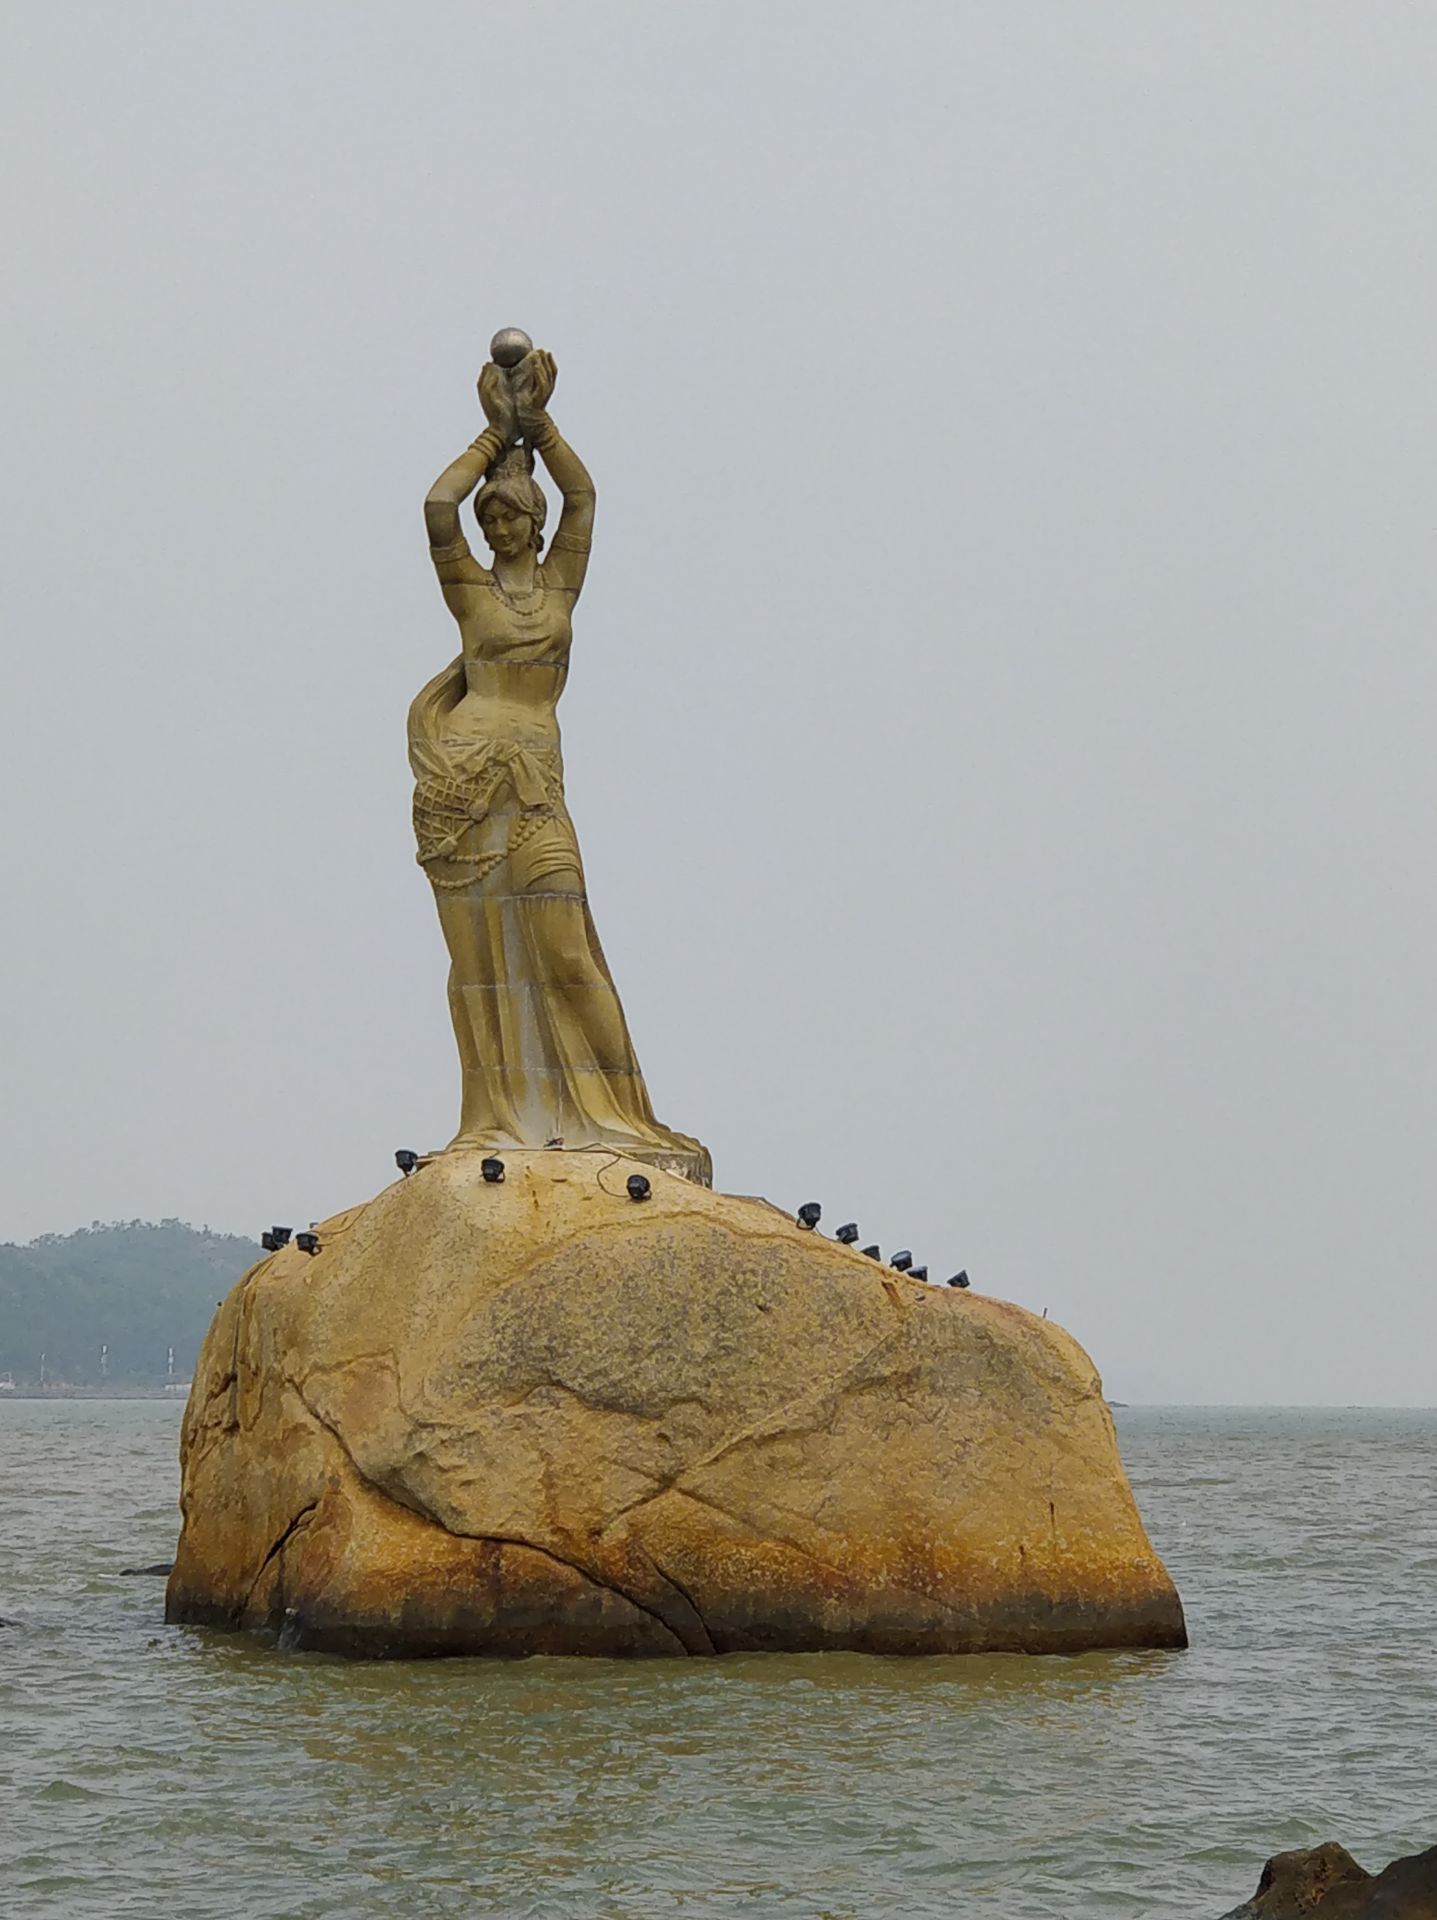 【携程攻略】珠海珠海渔女景点,这是一个珠海标志性景点，由著名雕塑家潘鹤根据南海渔民的传说设计的…